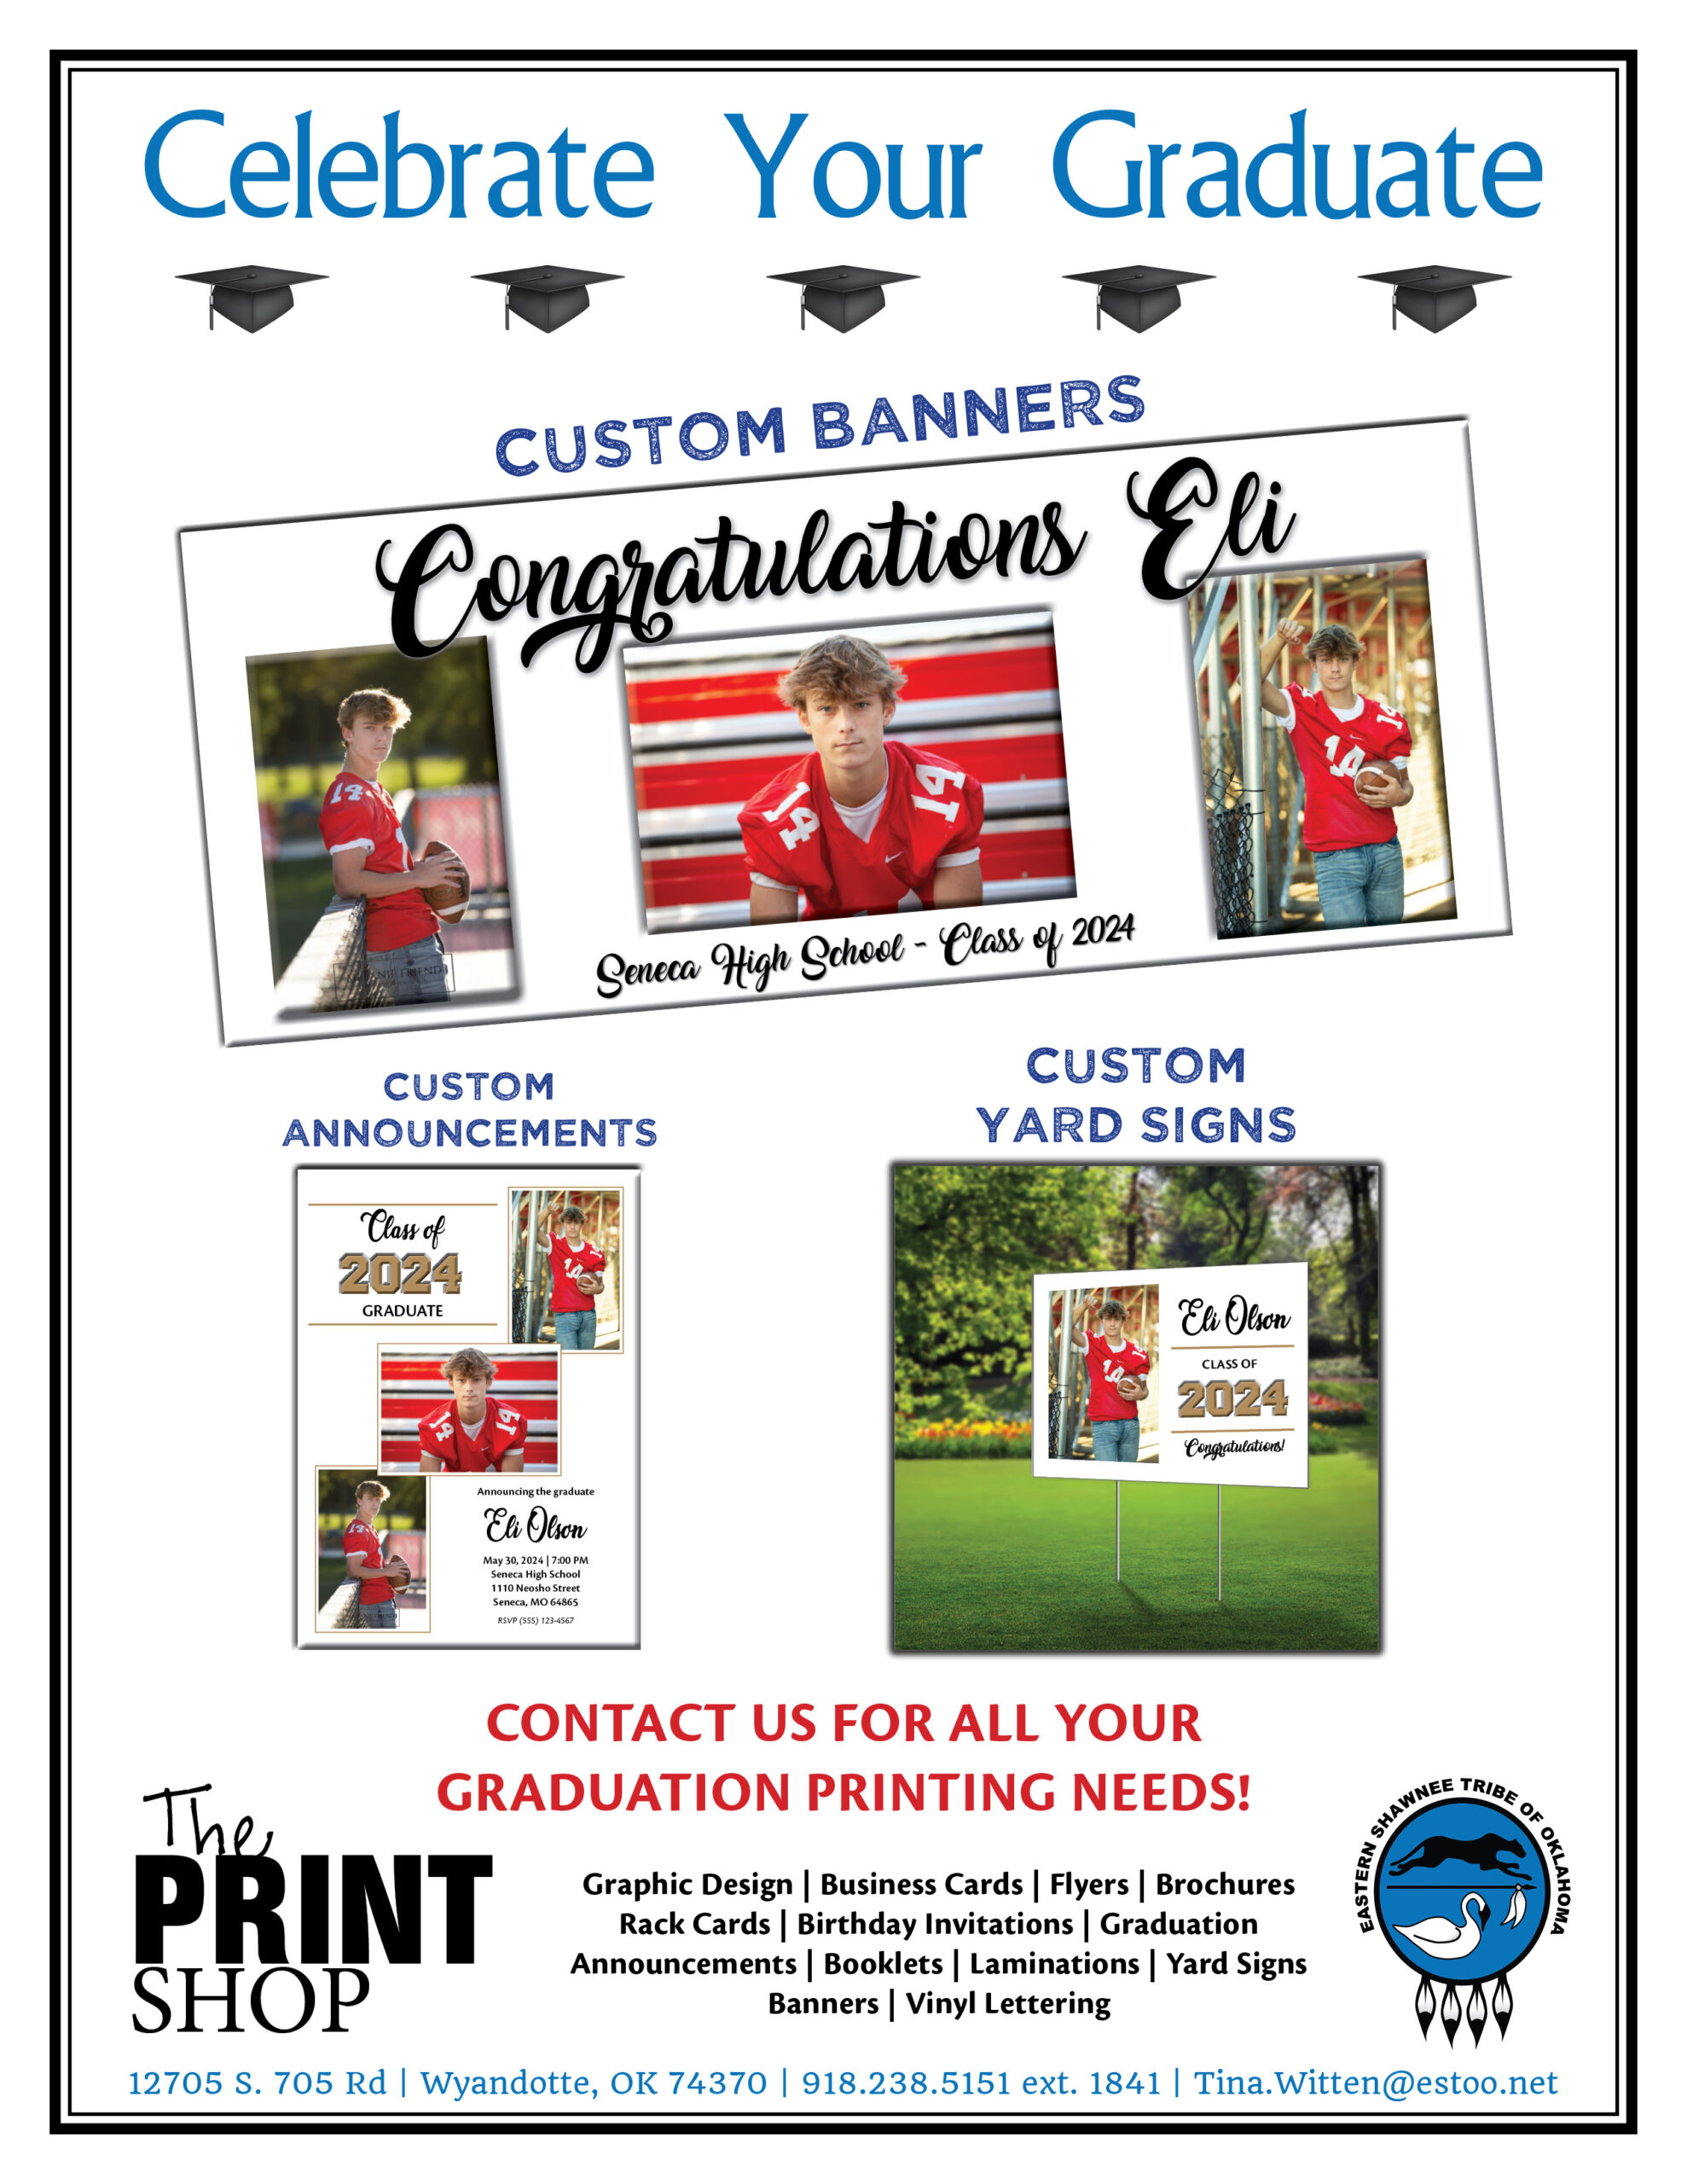 ESTOO Print Shop Graduation Signs and Invitations